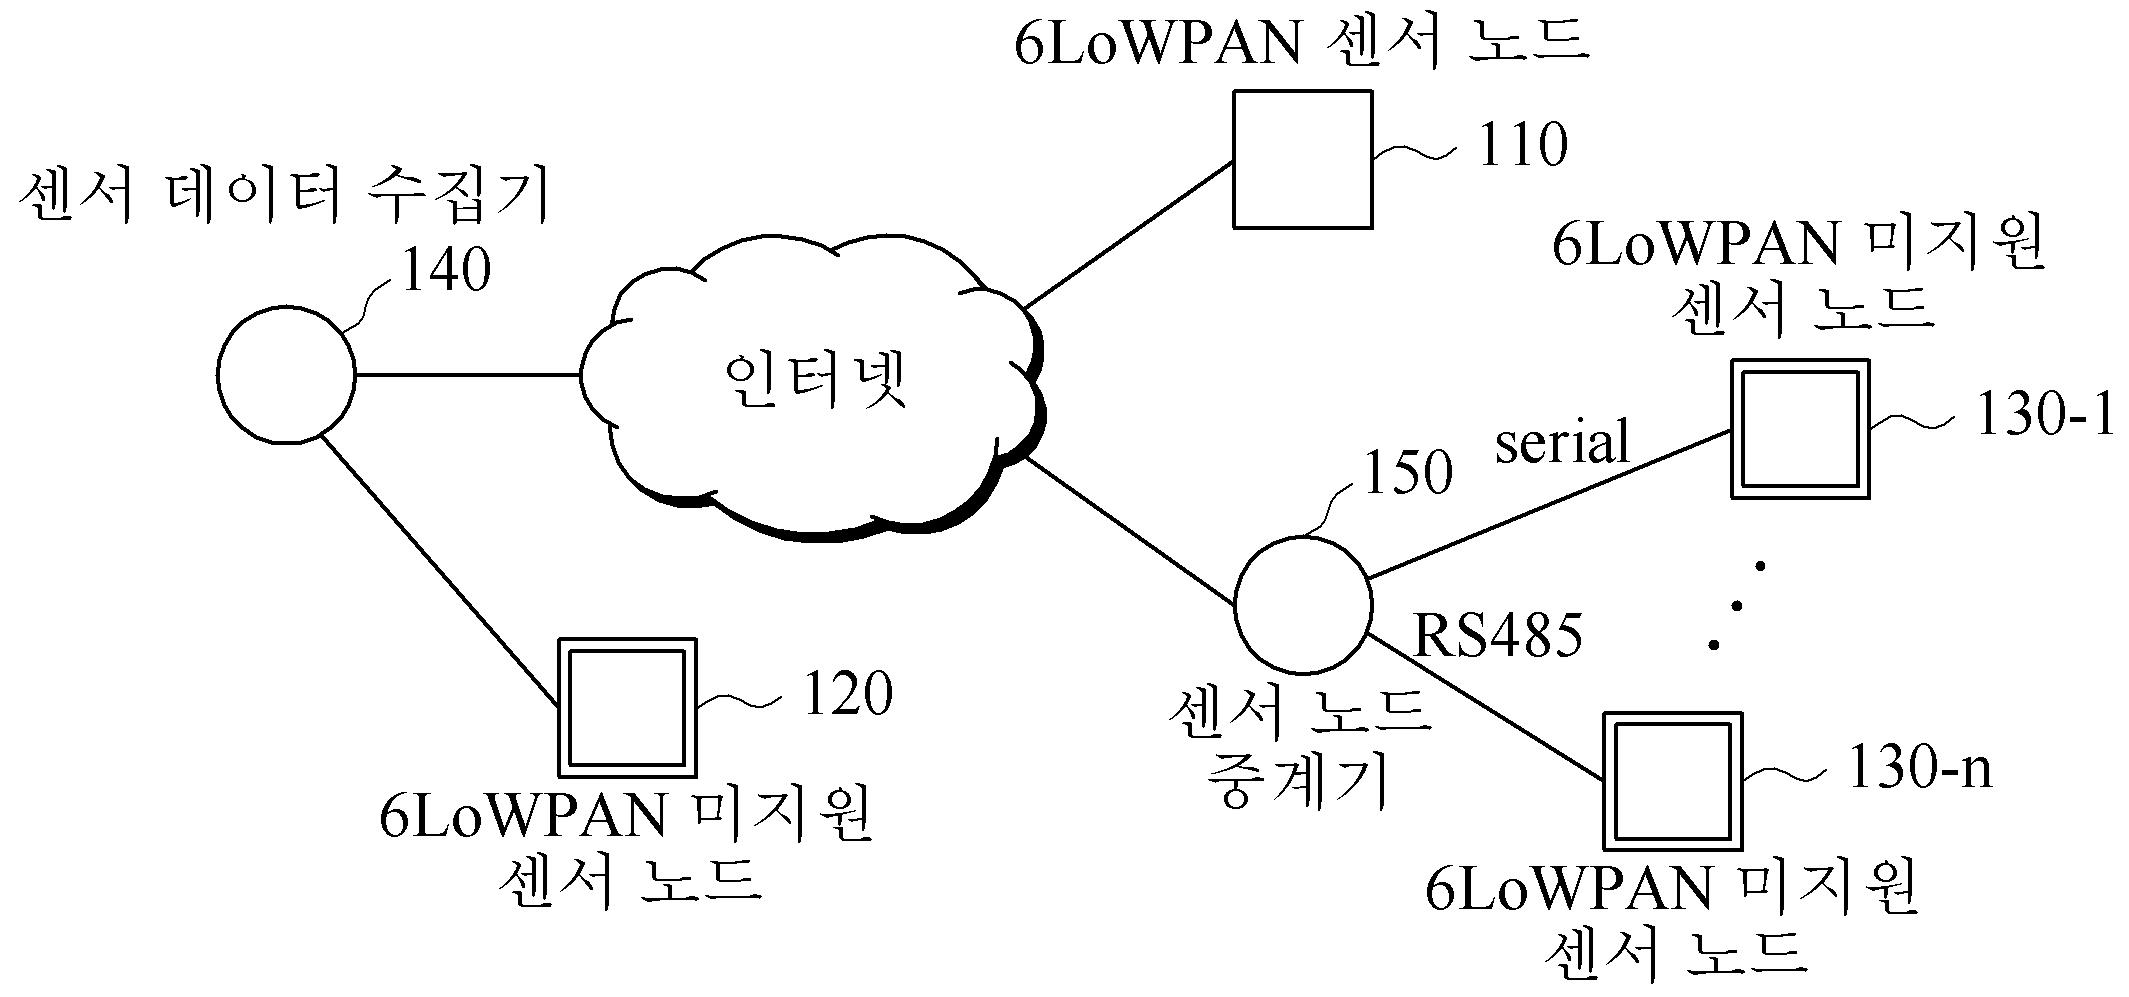 센서 네트워크 및 센서 네트워크에서 타임 슬롯 중계 기반의 링크 확장 방법